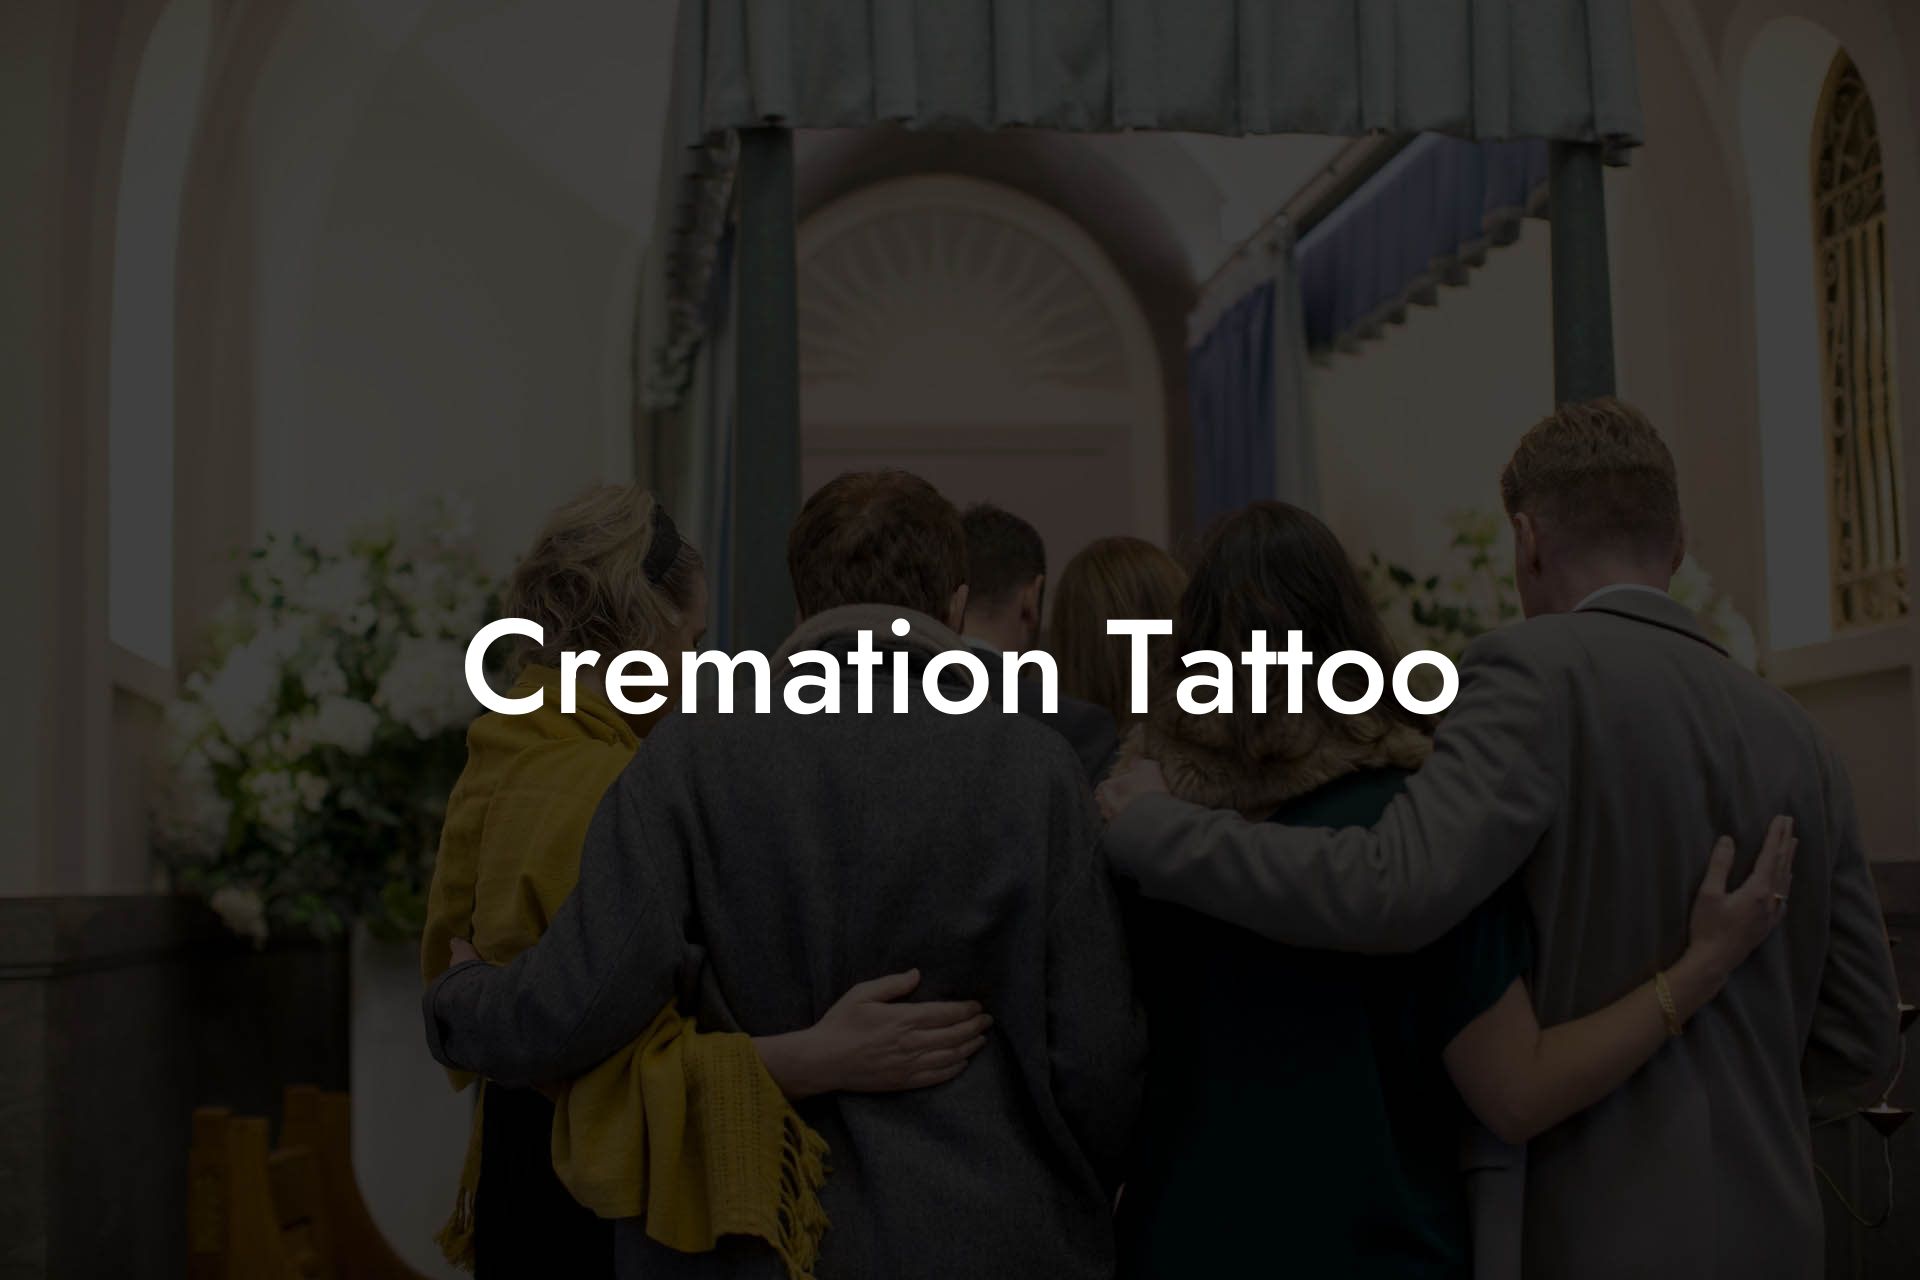 Cremation Tattoo